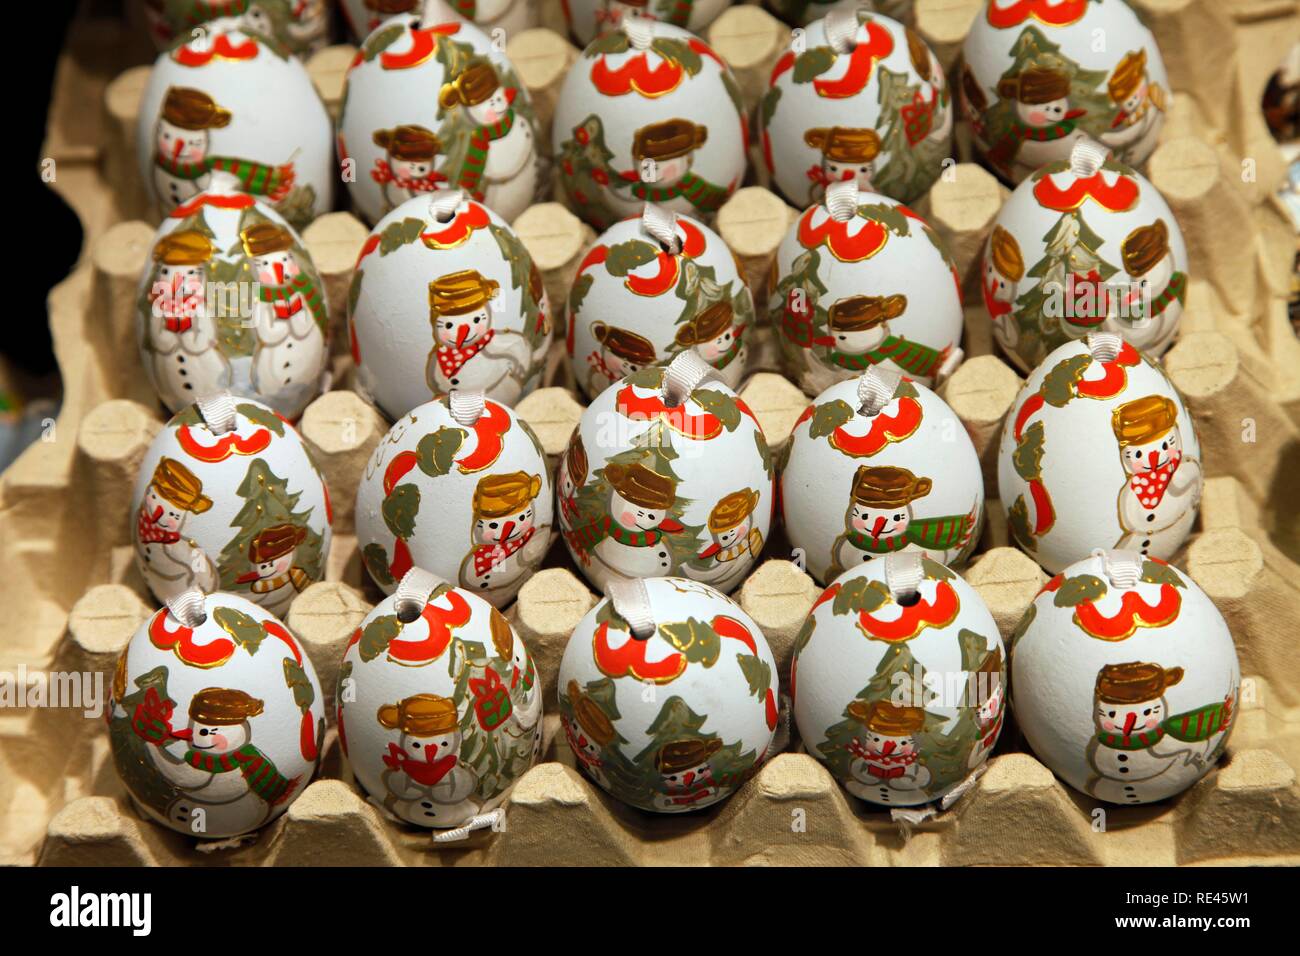 Tutto l'anno la vendita delle uova di Pasqua, Natale uova come decorazioni, Salisburgo, Austria, Europa Foto Stock